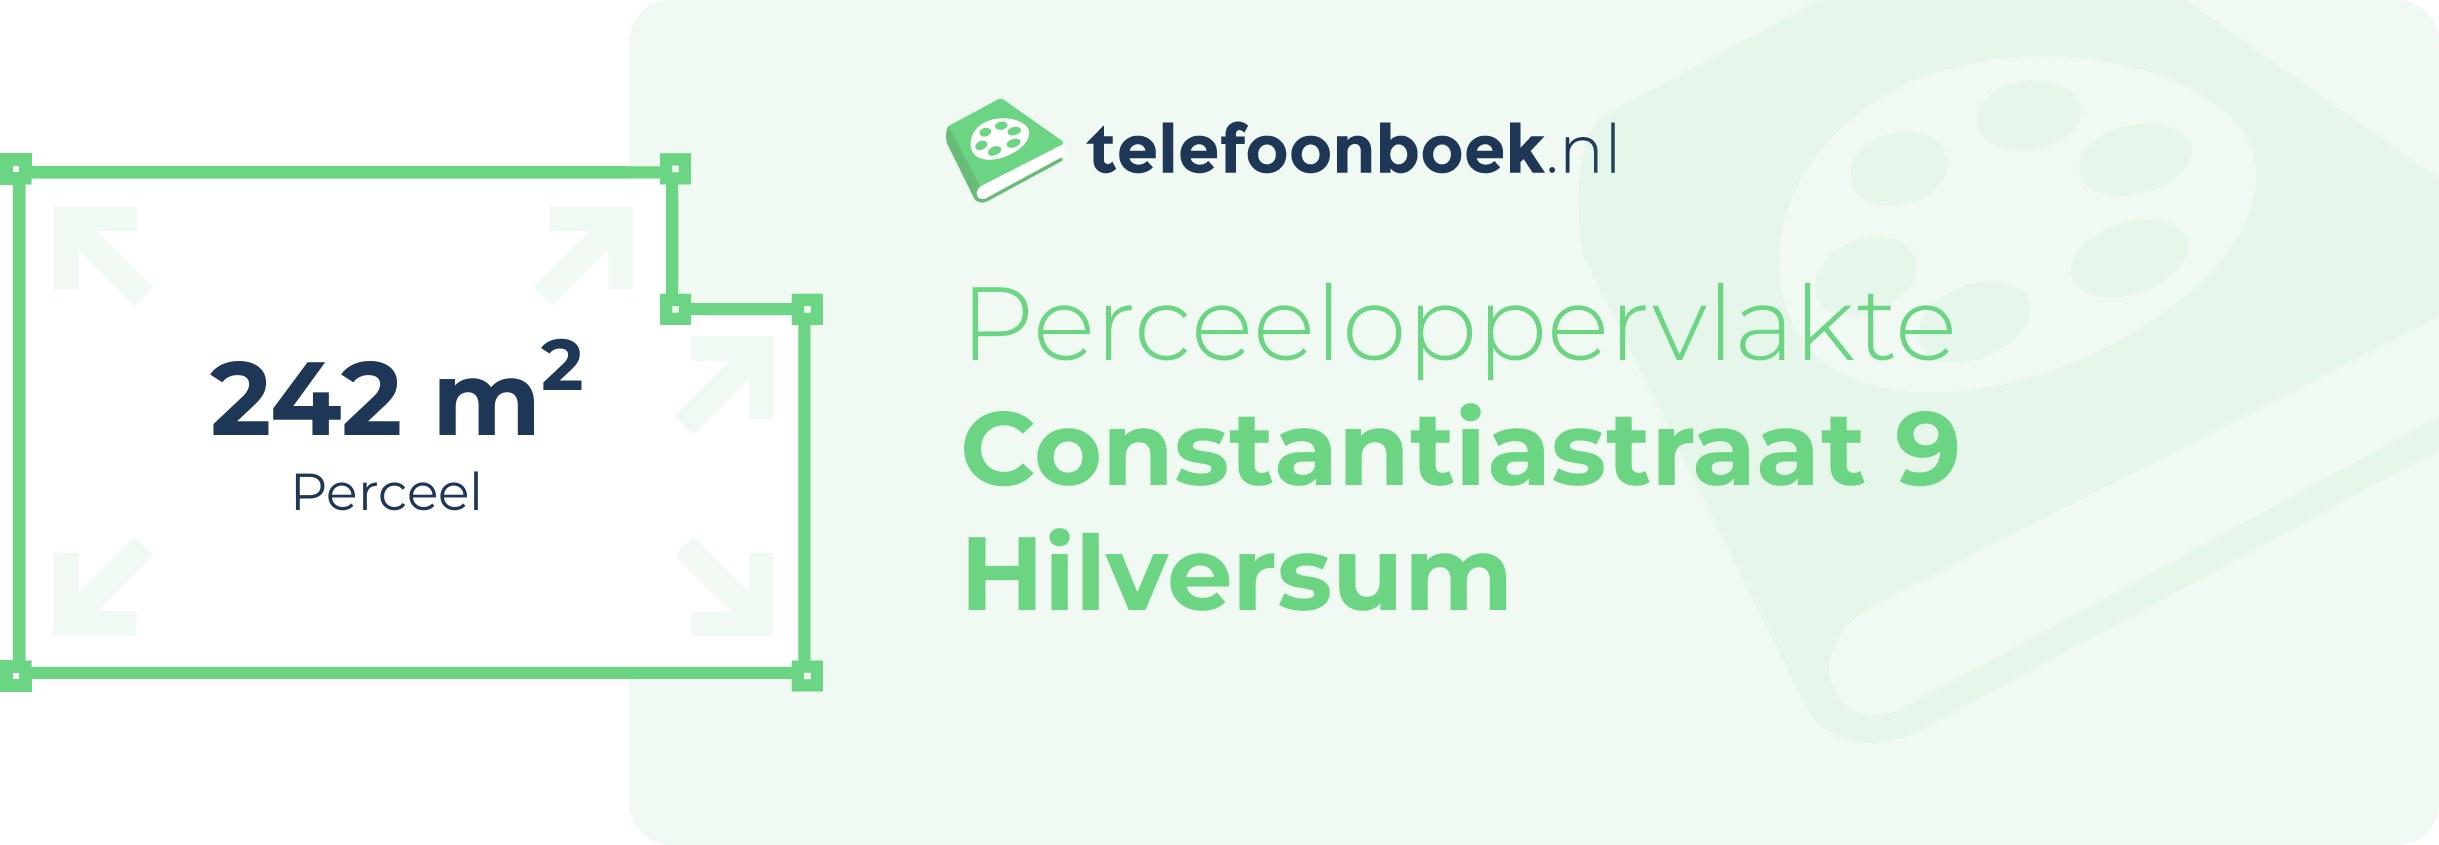 Perceeloppervlakte Constantiastraat 9 Hilversum